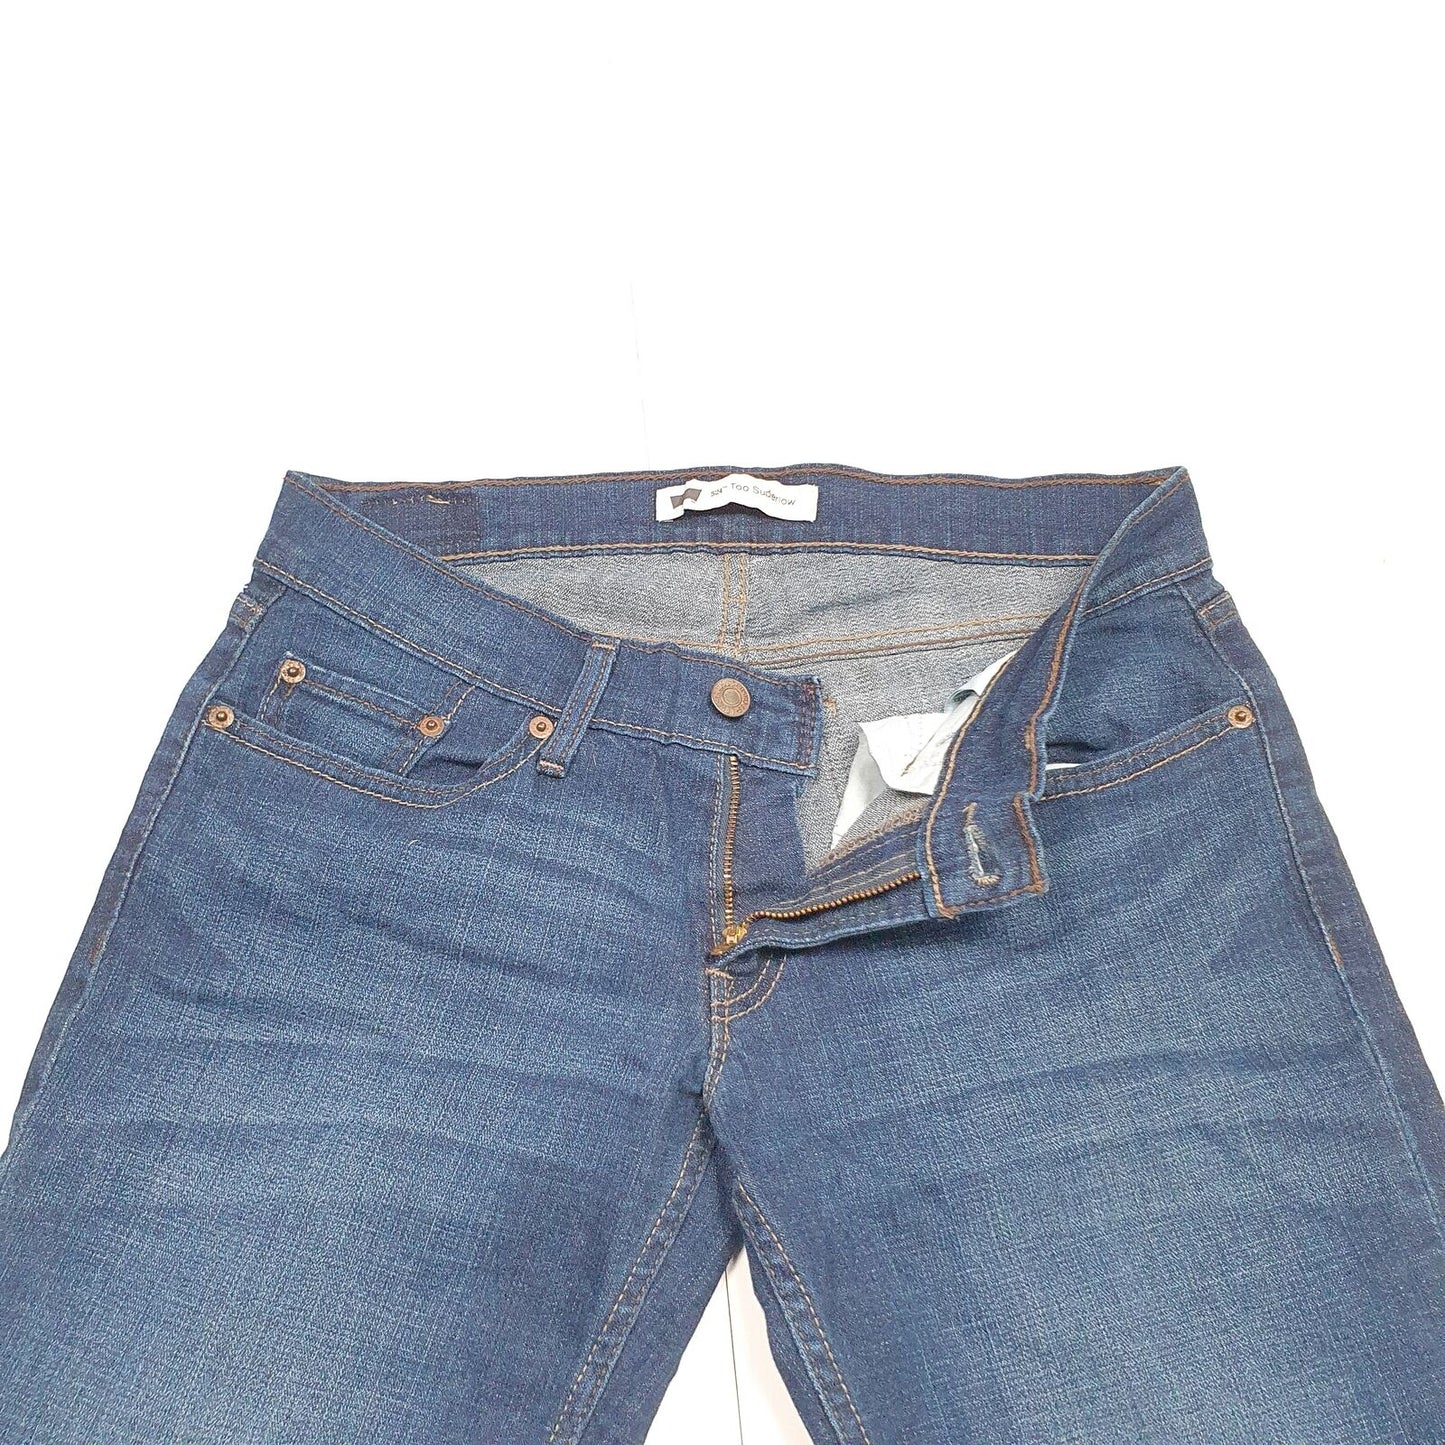 Womens LEVI'S 524 Superlow Bootcut Fit Blue Denim Jeans Trousers UK14